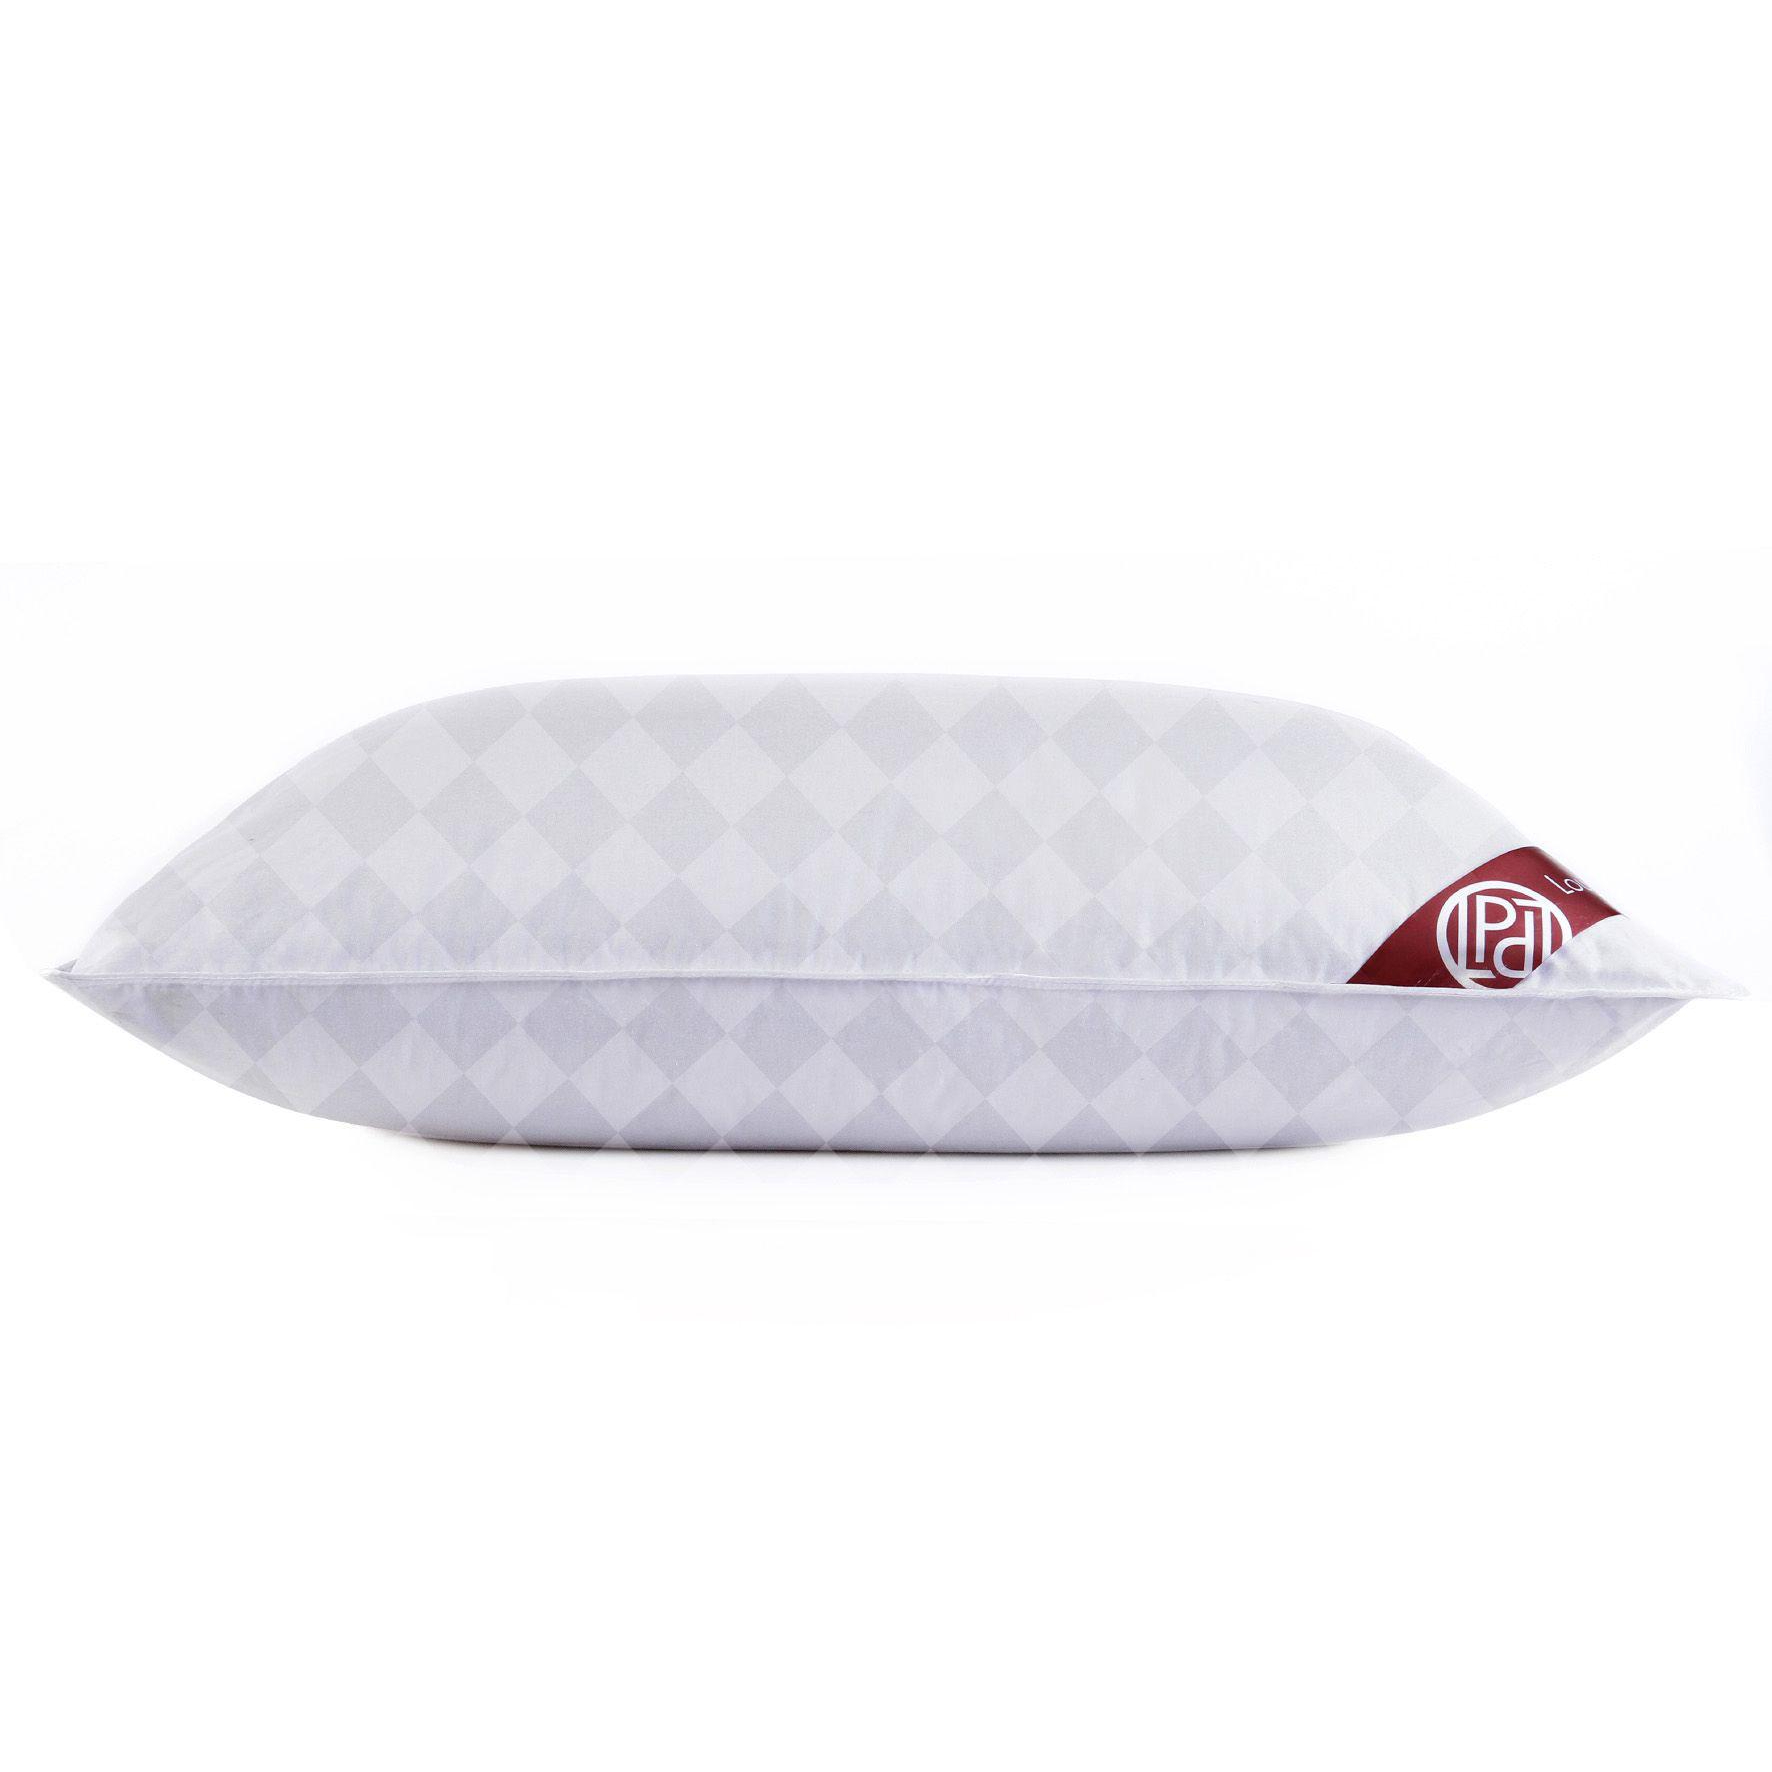 Пуховая подушка Louis Pascal Мишель белая с серым 70х70 см (ЛП1053) пуховое одеяло louis pascal николь бежевое 200х220 см лп2022